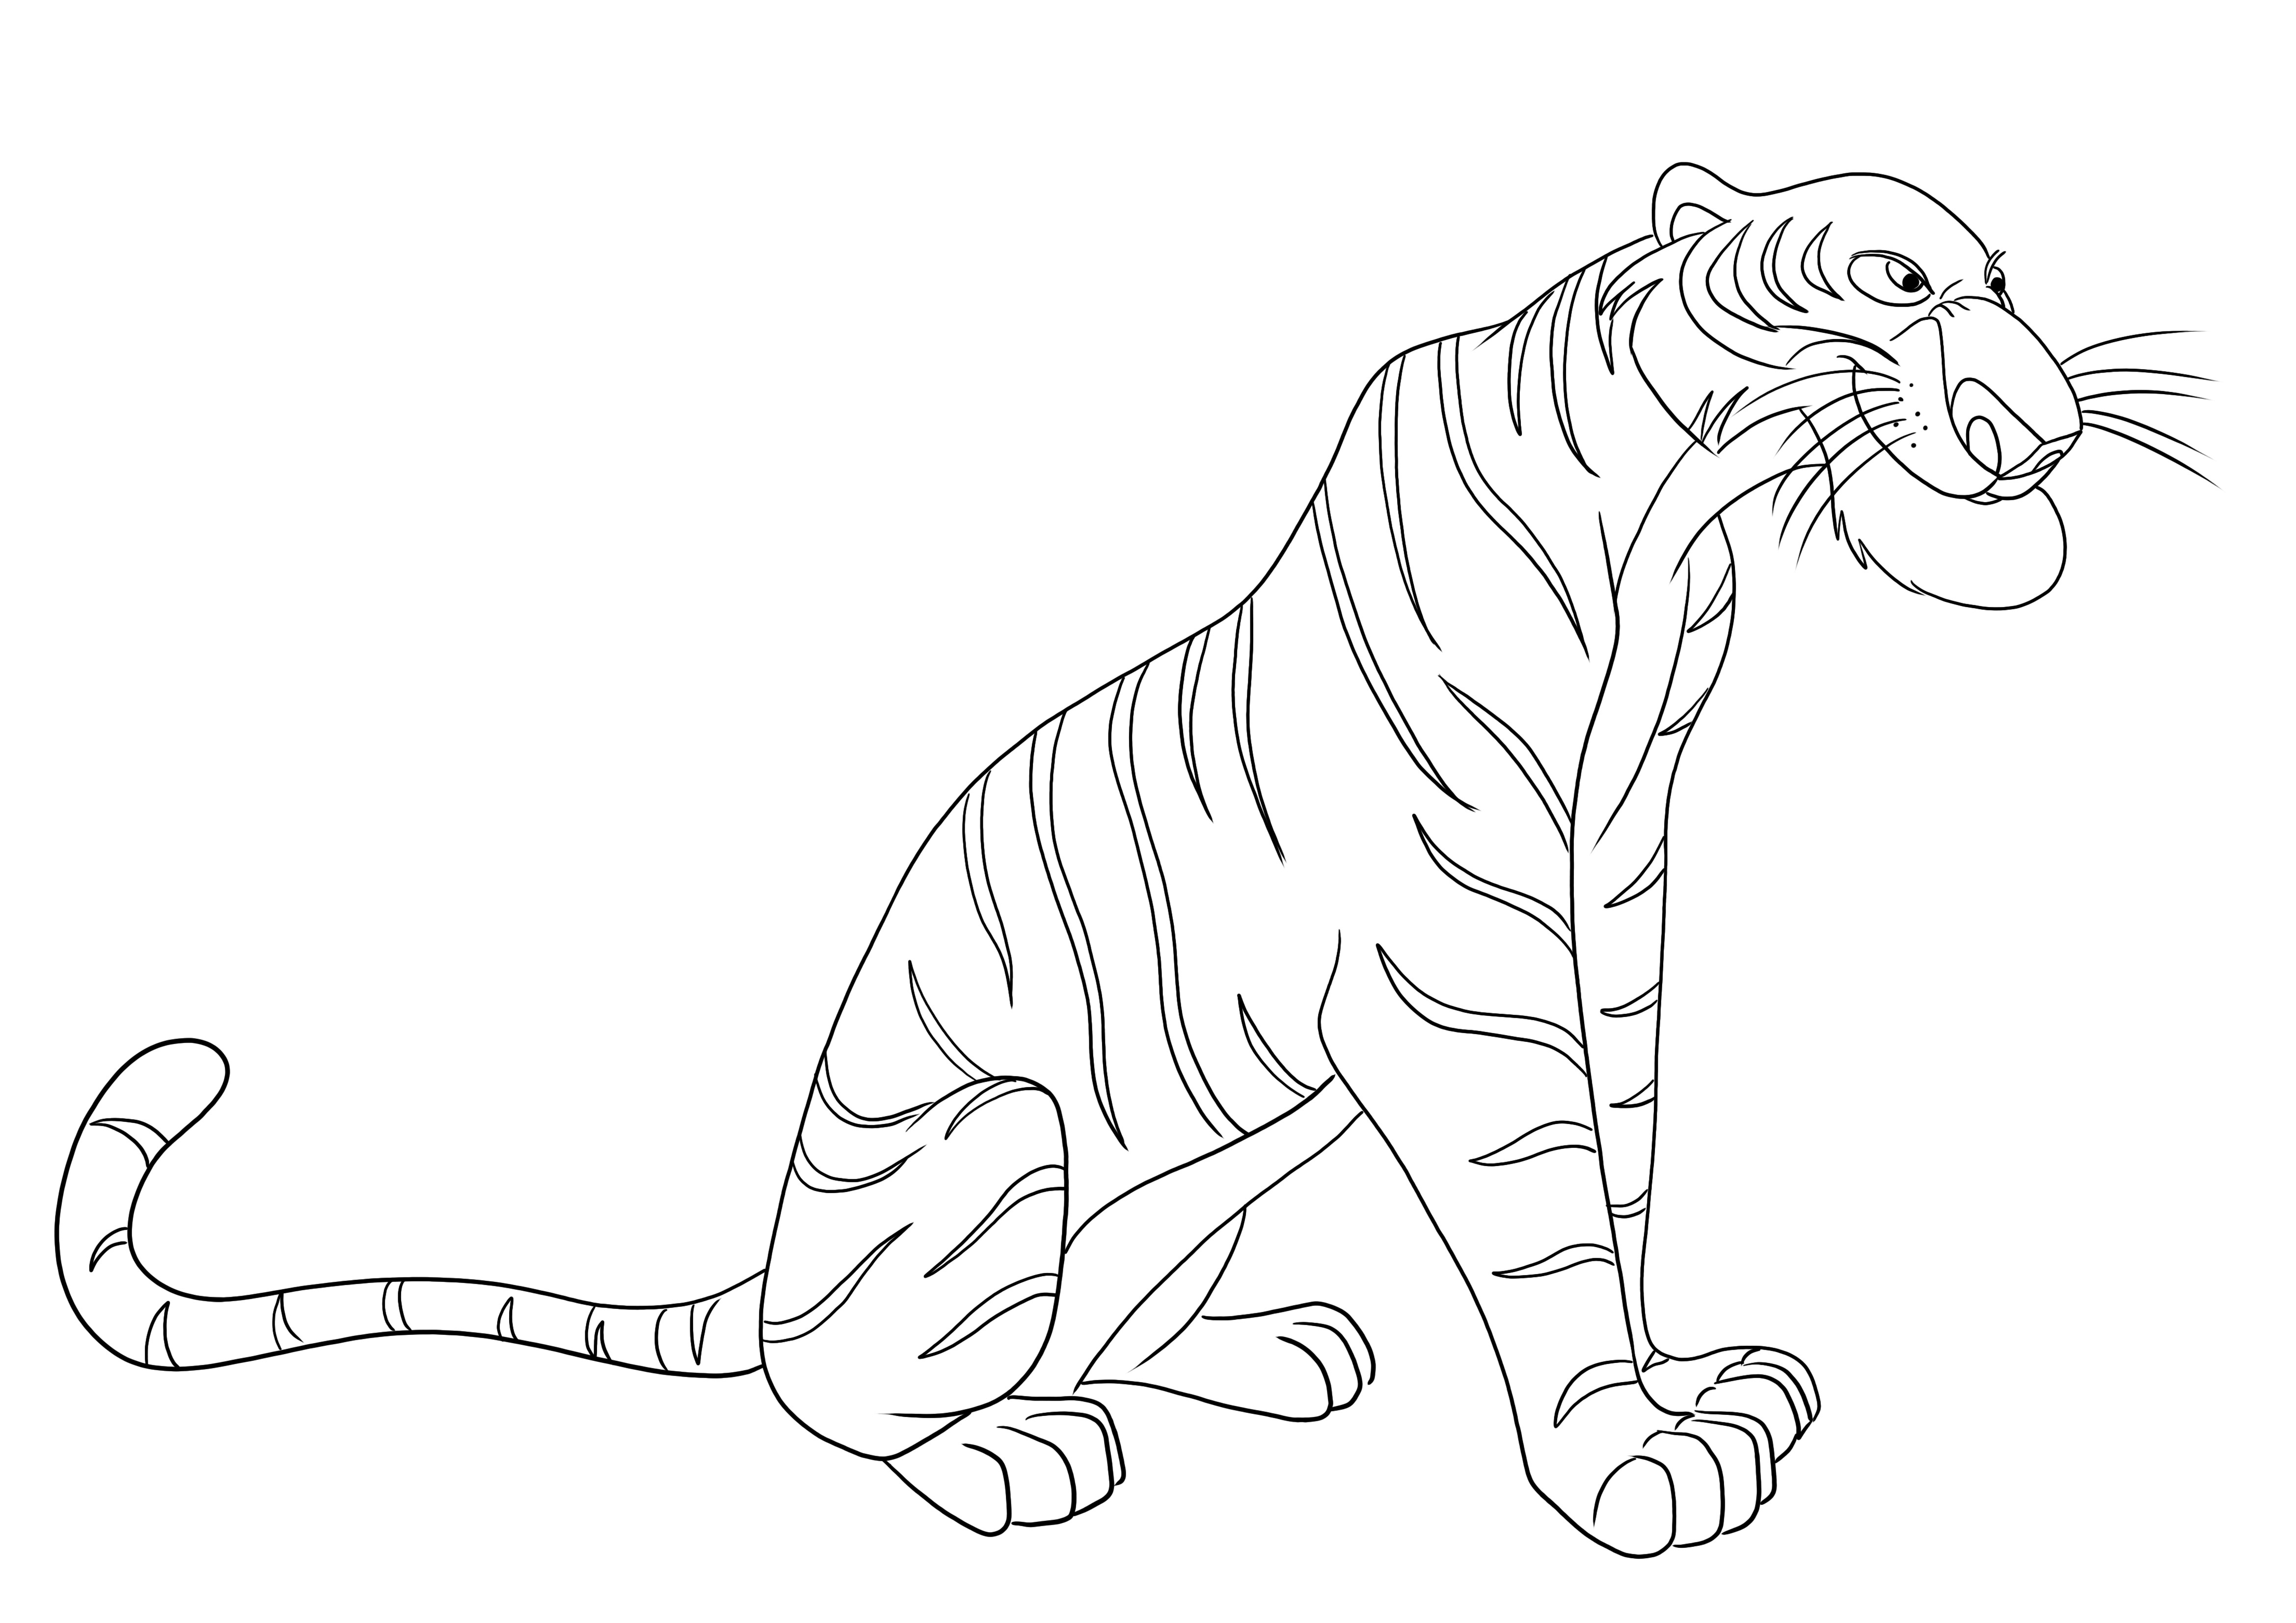 Shere Khan le tigre du livre de la jungle image de coloriage gratuit à télécharger